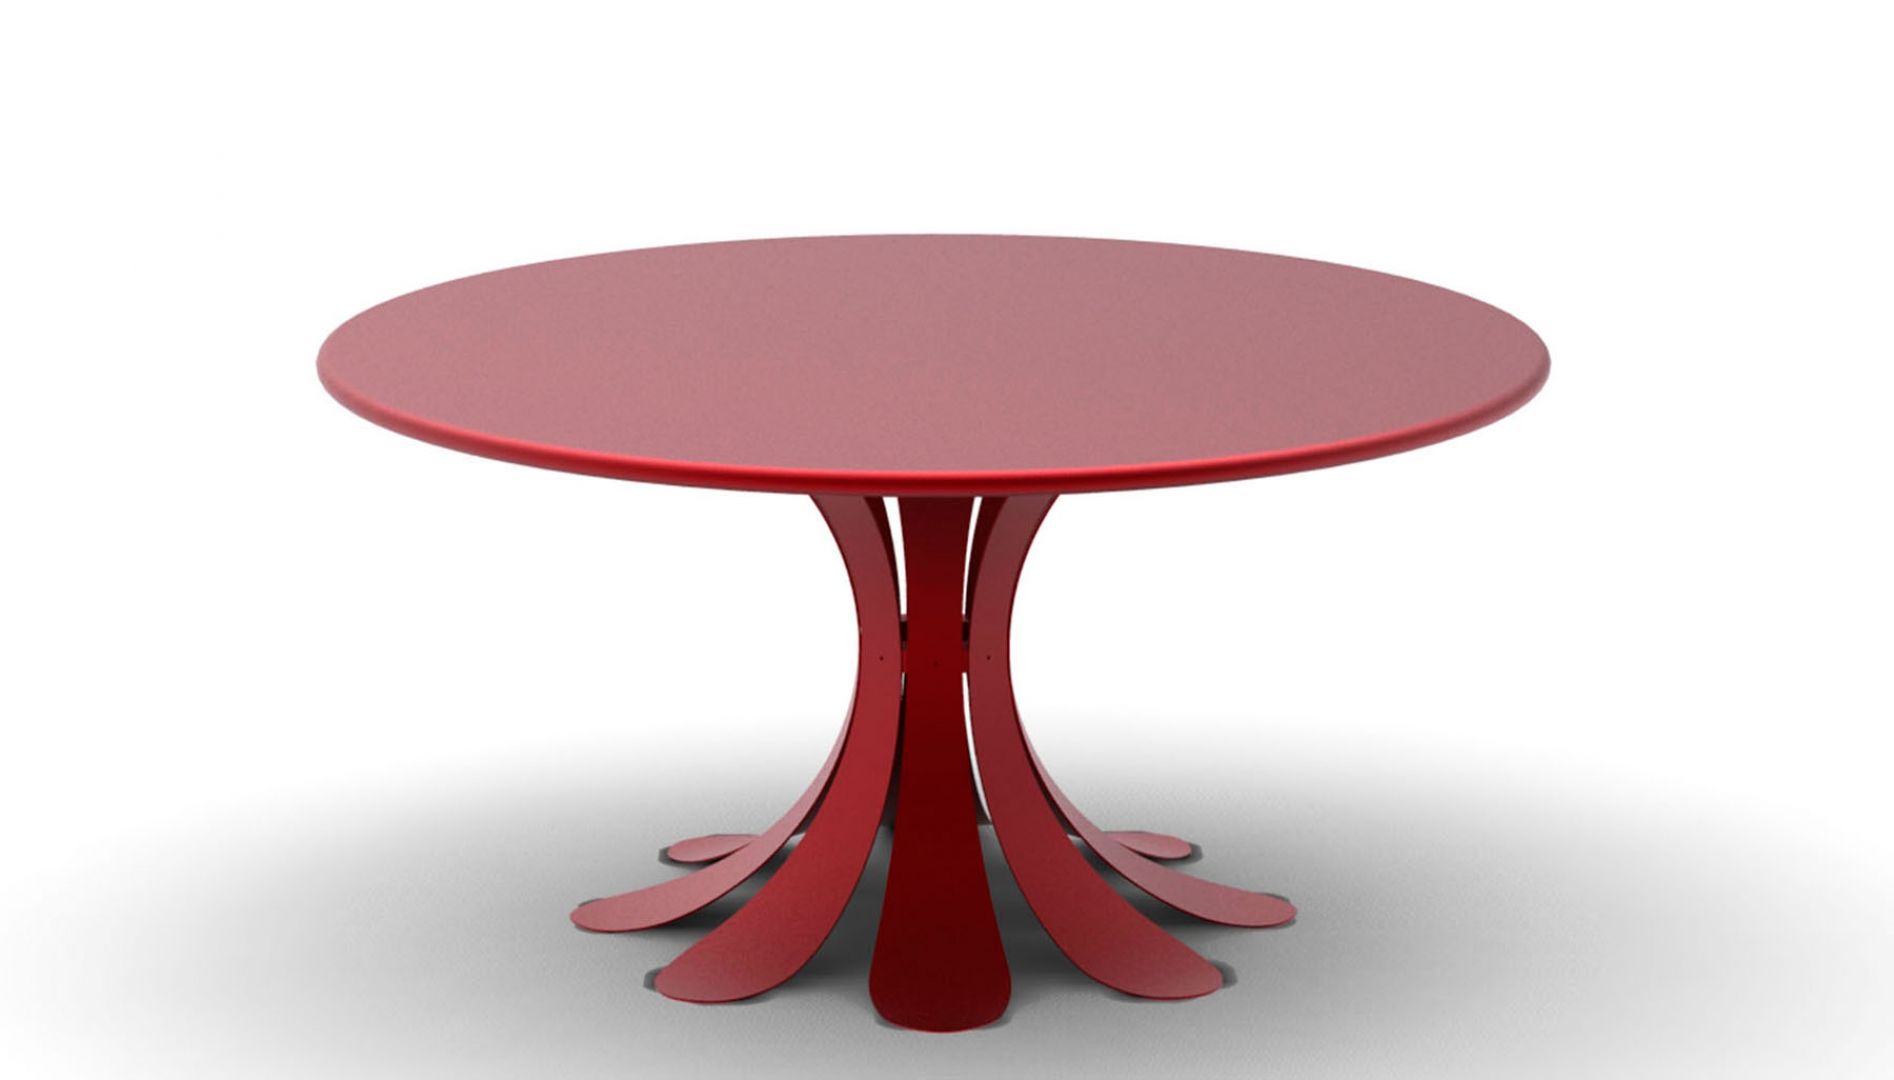 Czerwony stolik De Repas Fleur kształtem przypomina kielich kwiatu. Fot. KSL Living 